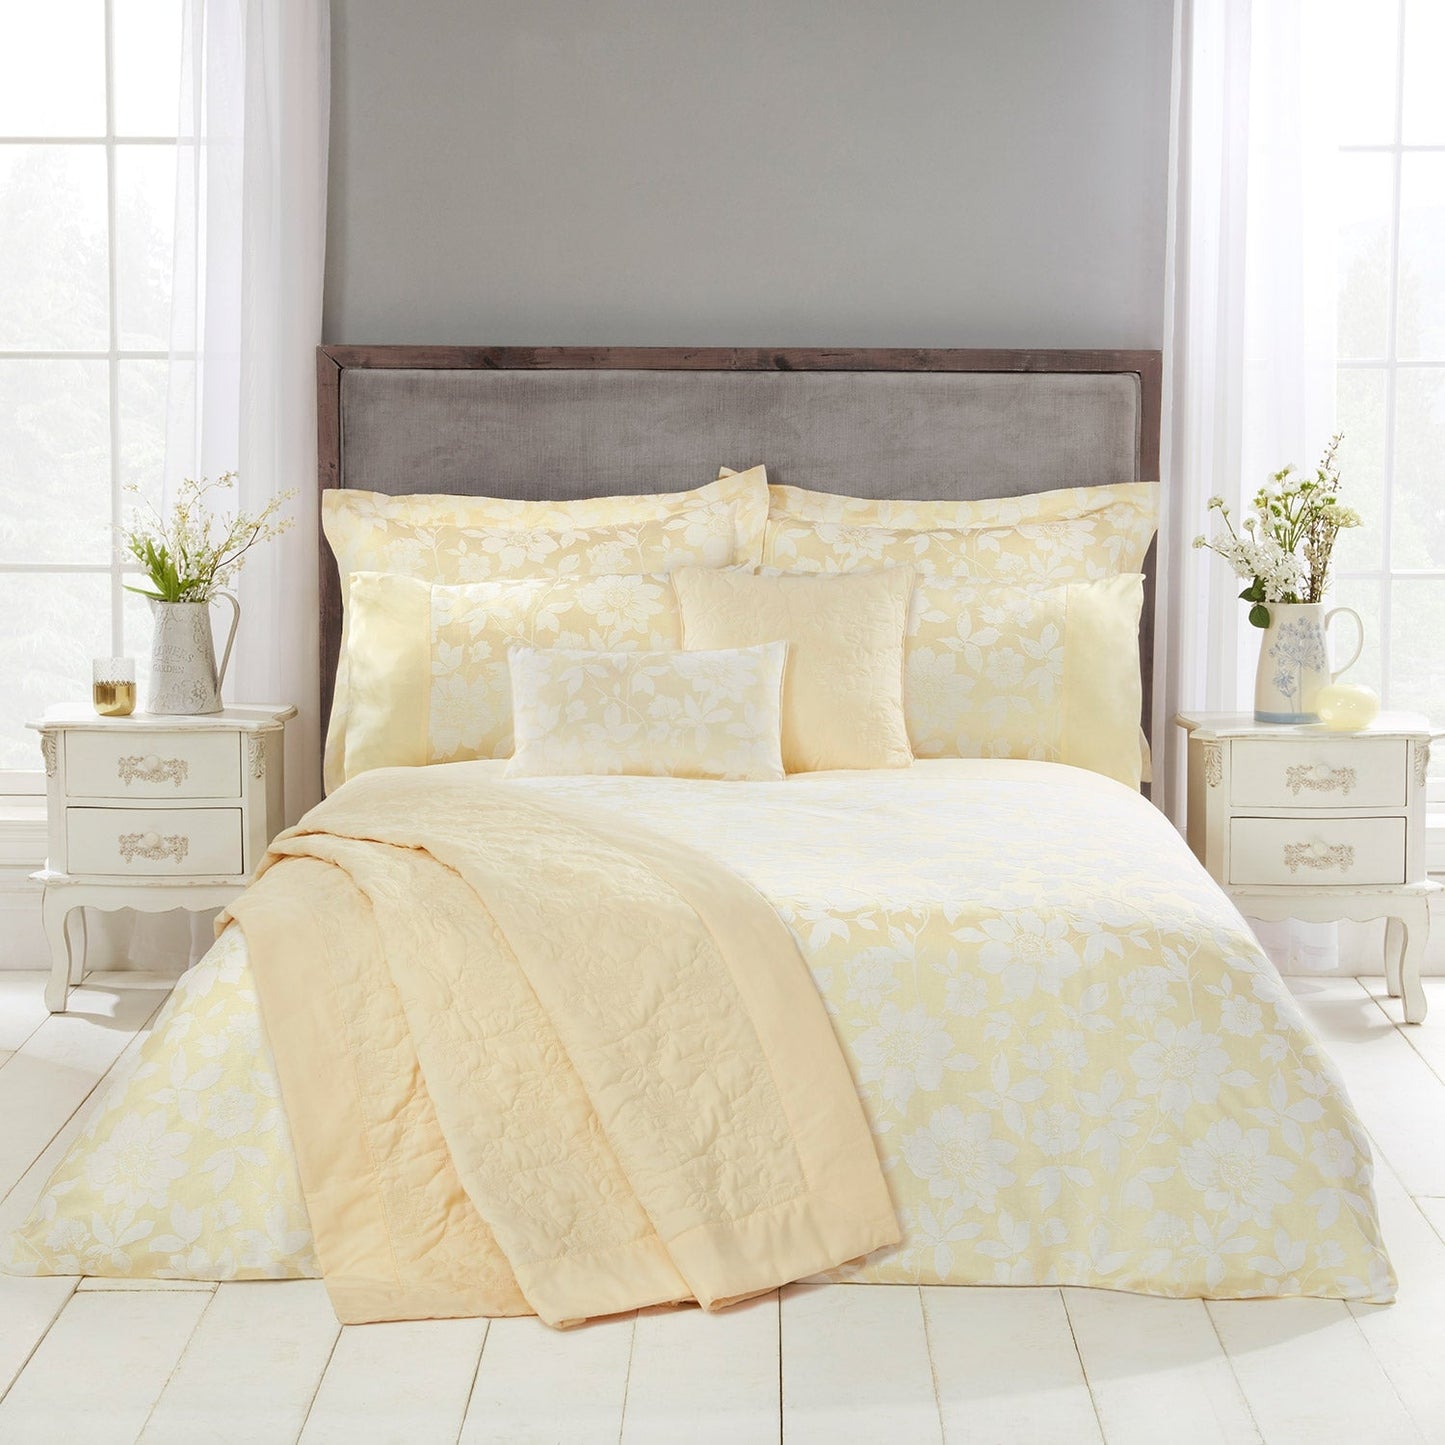 Lottie Lemon Luxury Cotton Rich Jacquard Duvet Cover